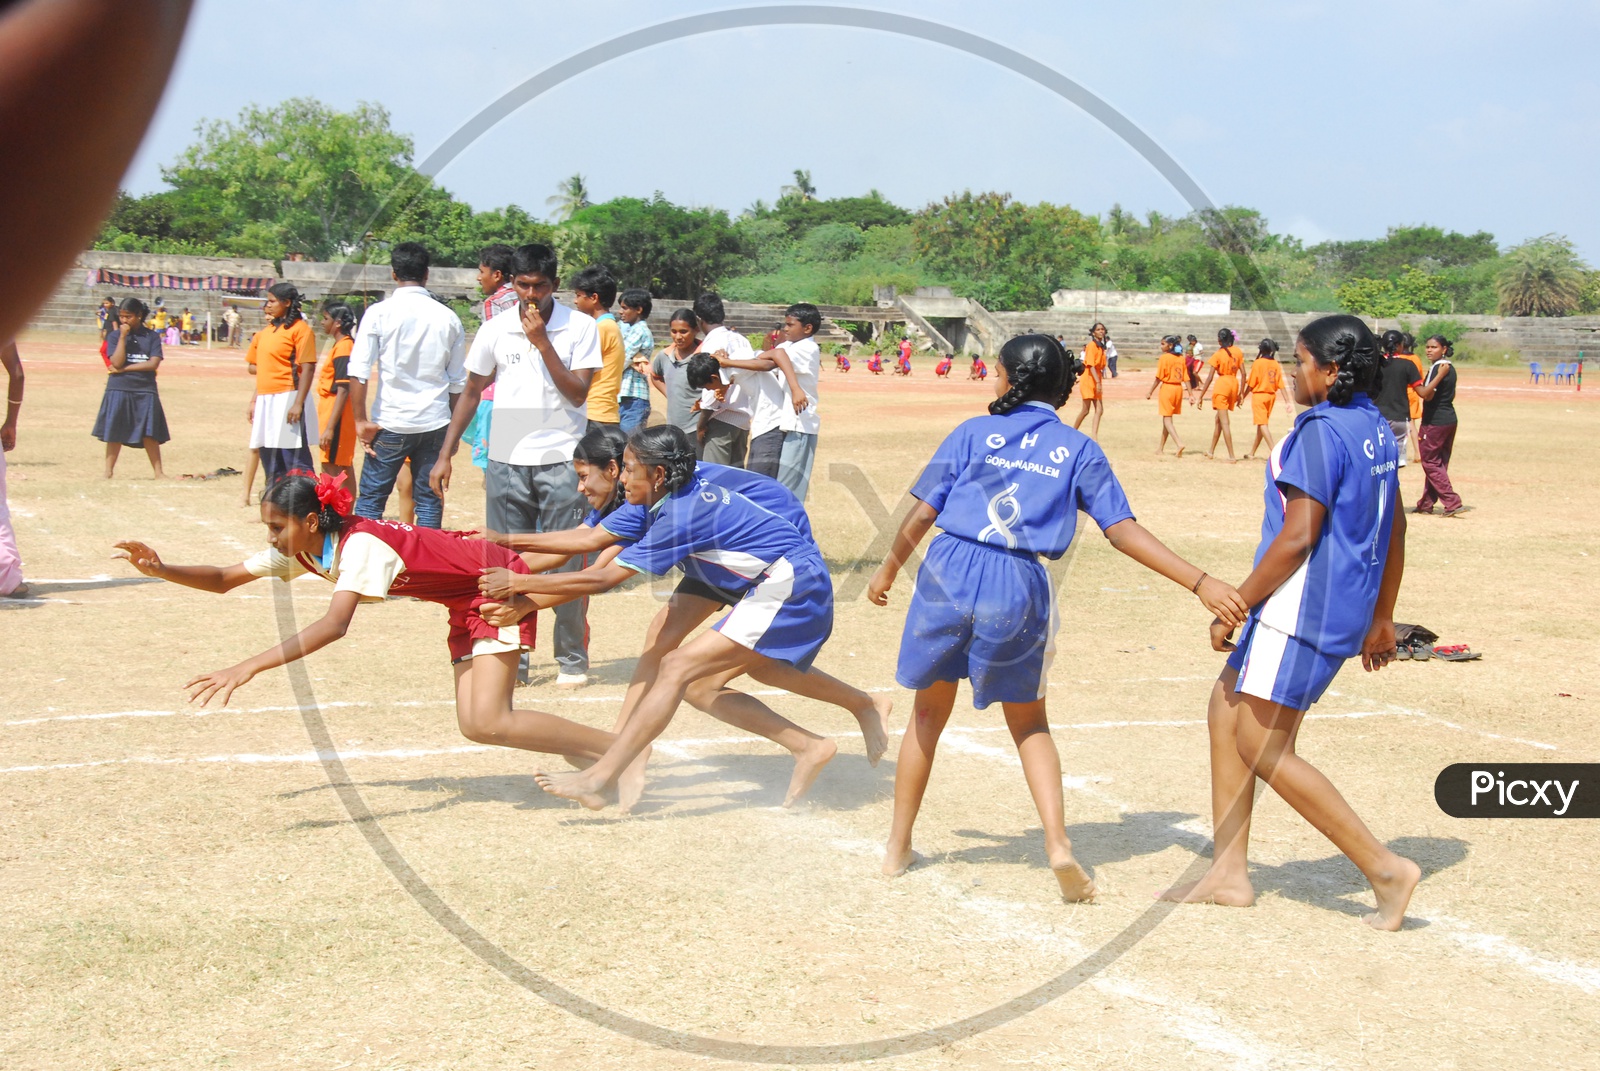 School girls playing kabaddi